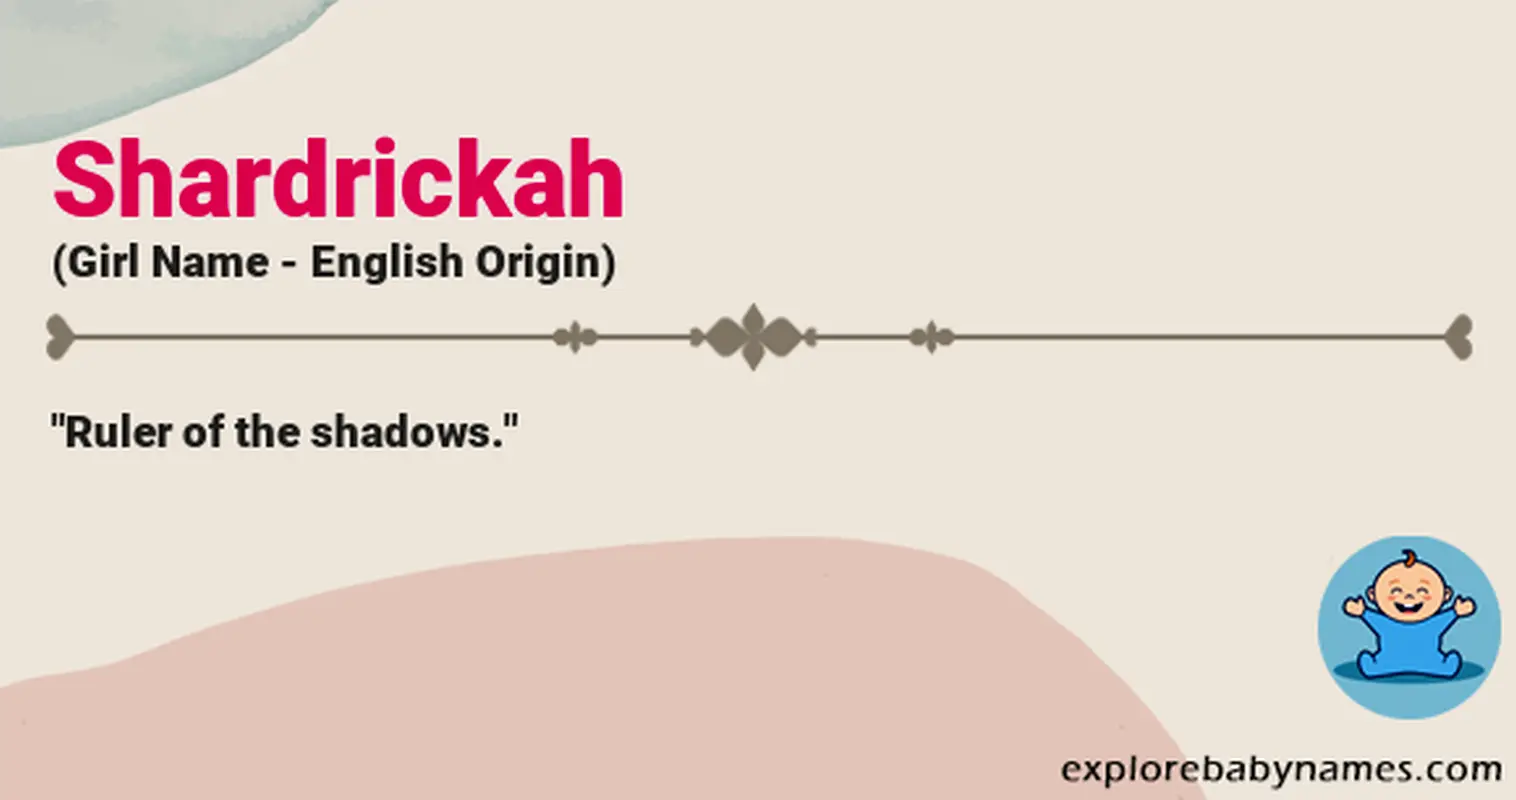 Meaning of Shardrickah